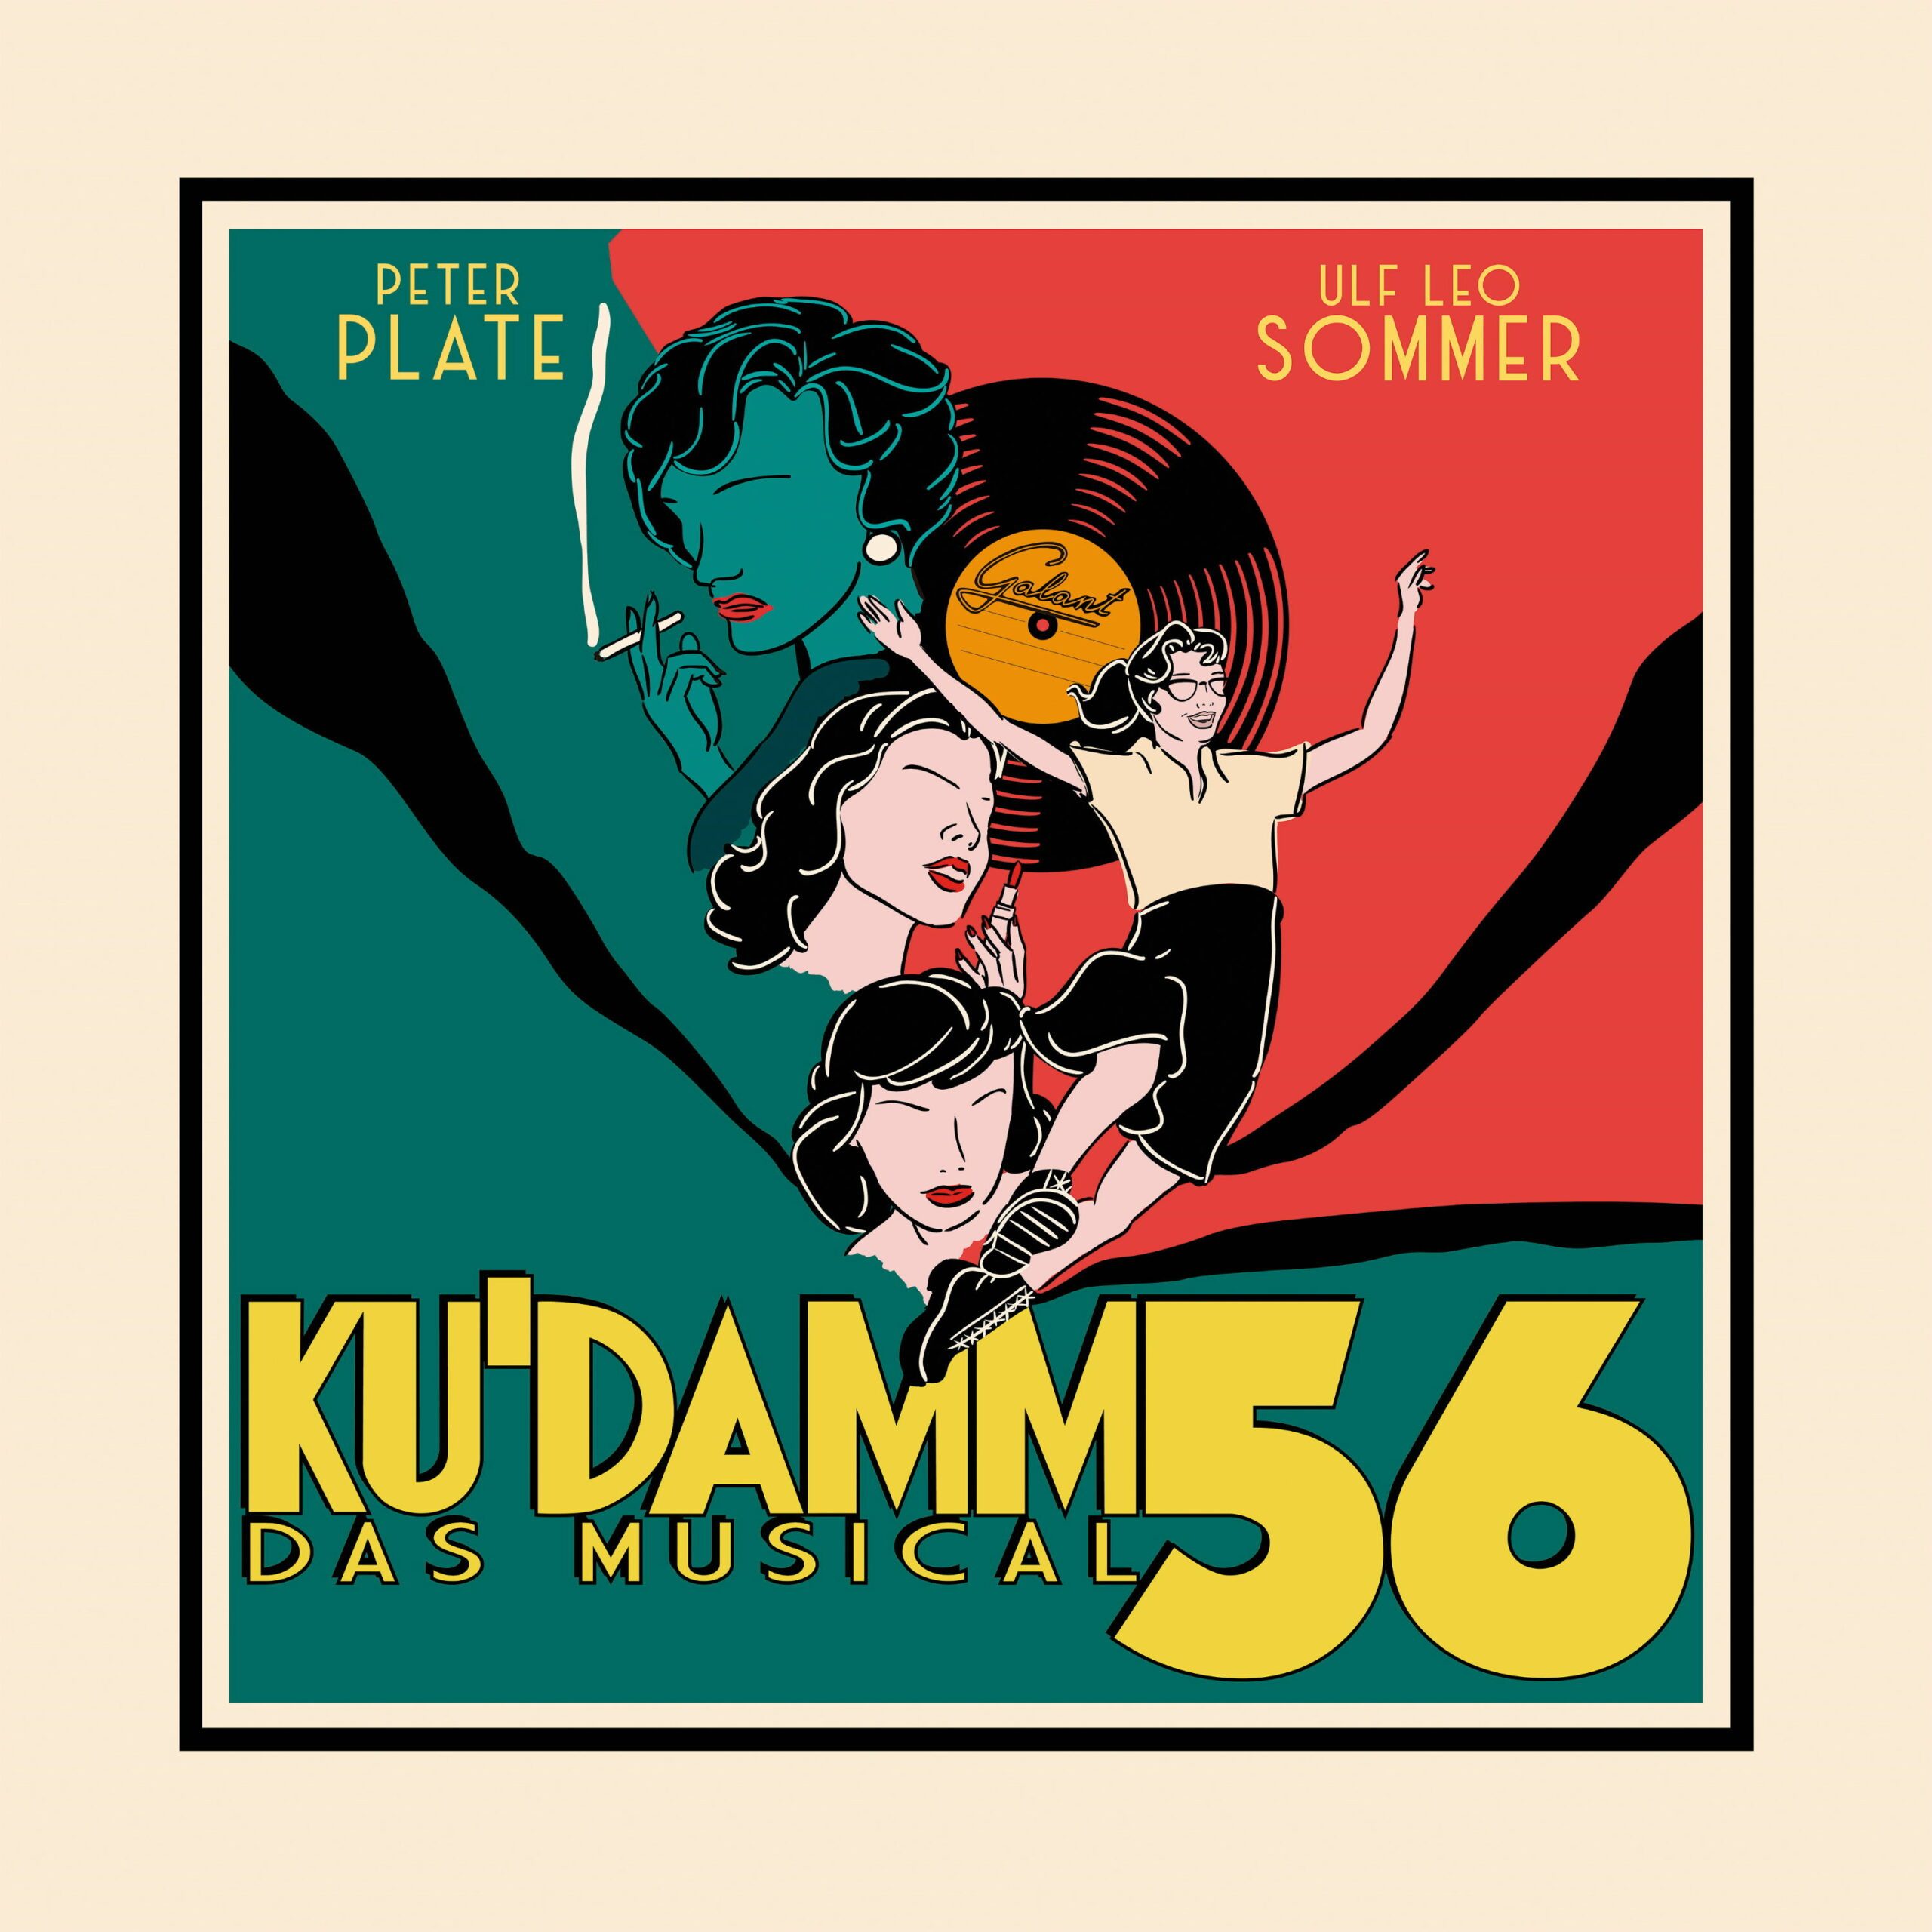 Ku'damm 56 Logo